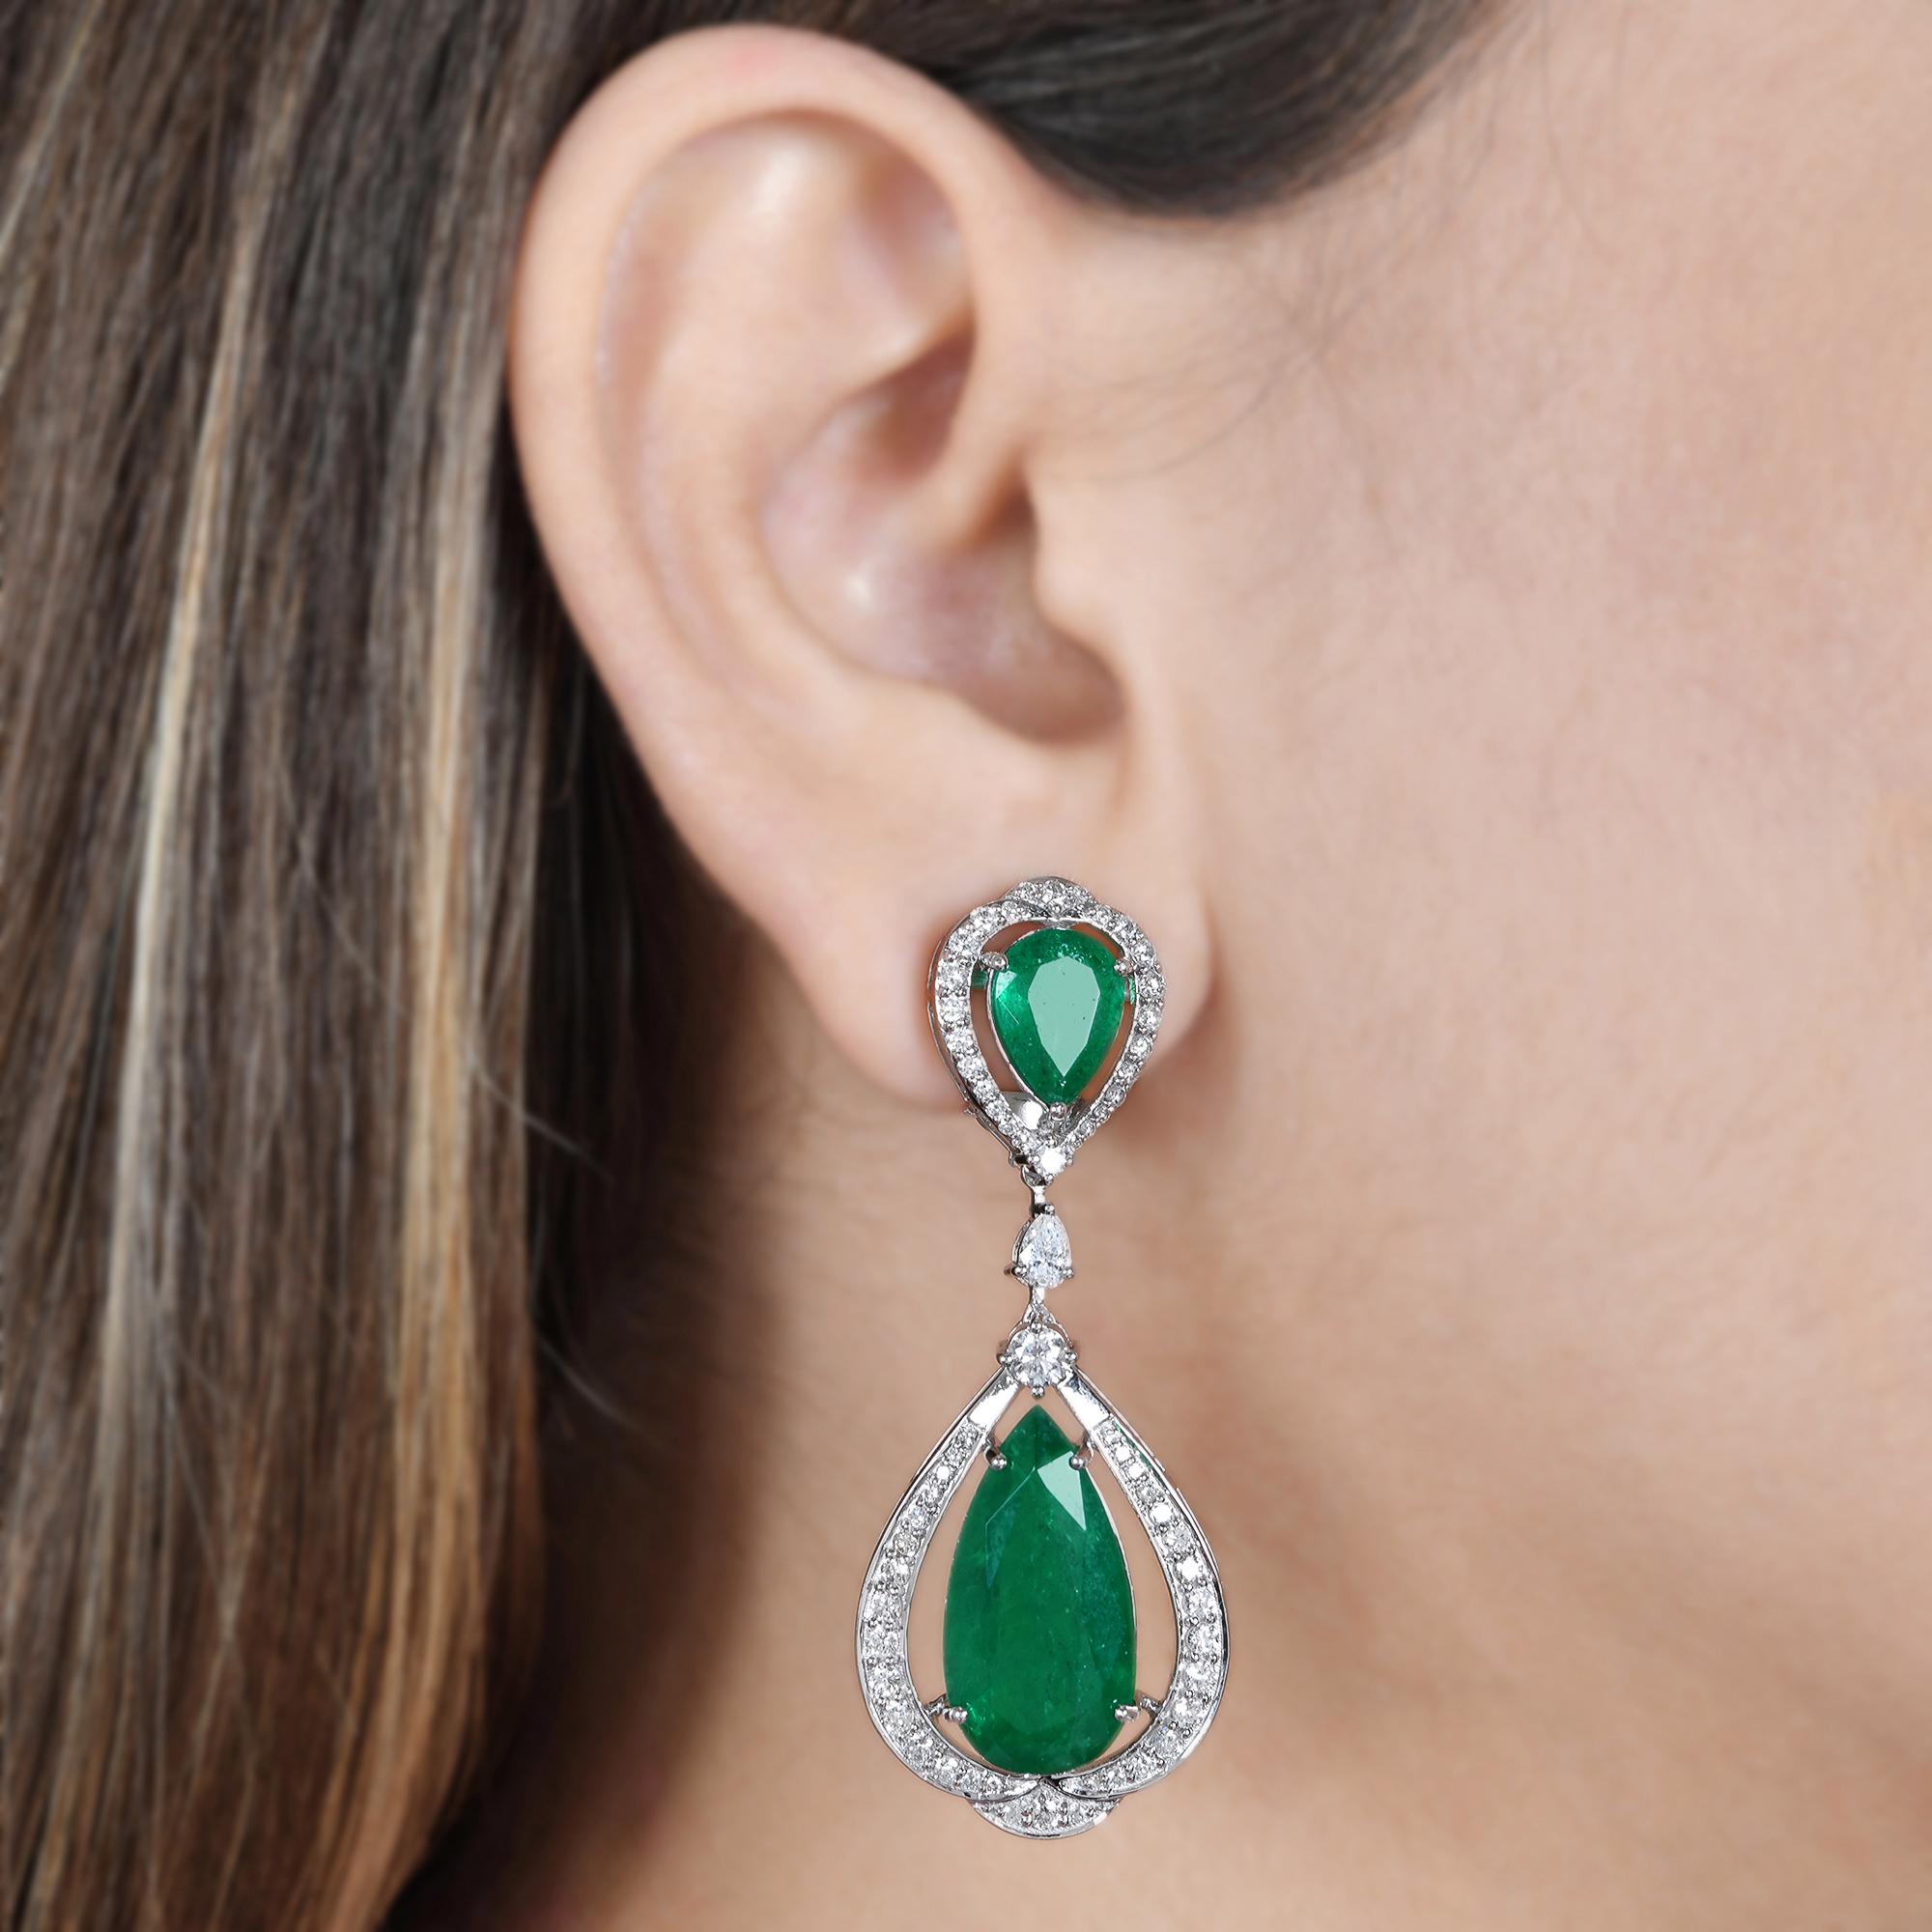 Women's Zambian Emerald Gemstone Dangle Earrings Diamond 18 Karat White Gold Jewelry New For Sale